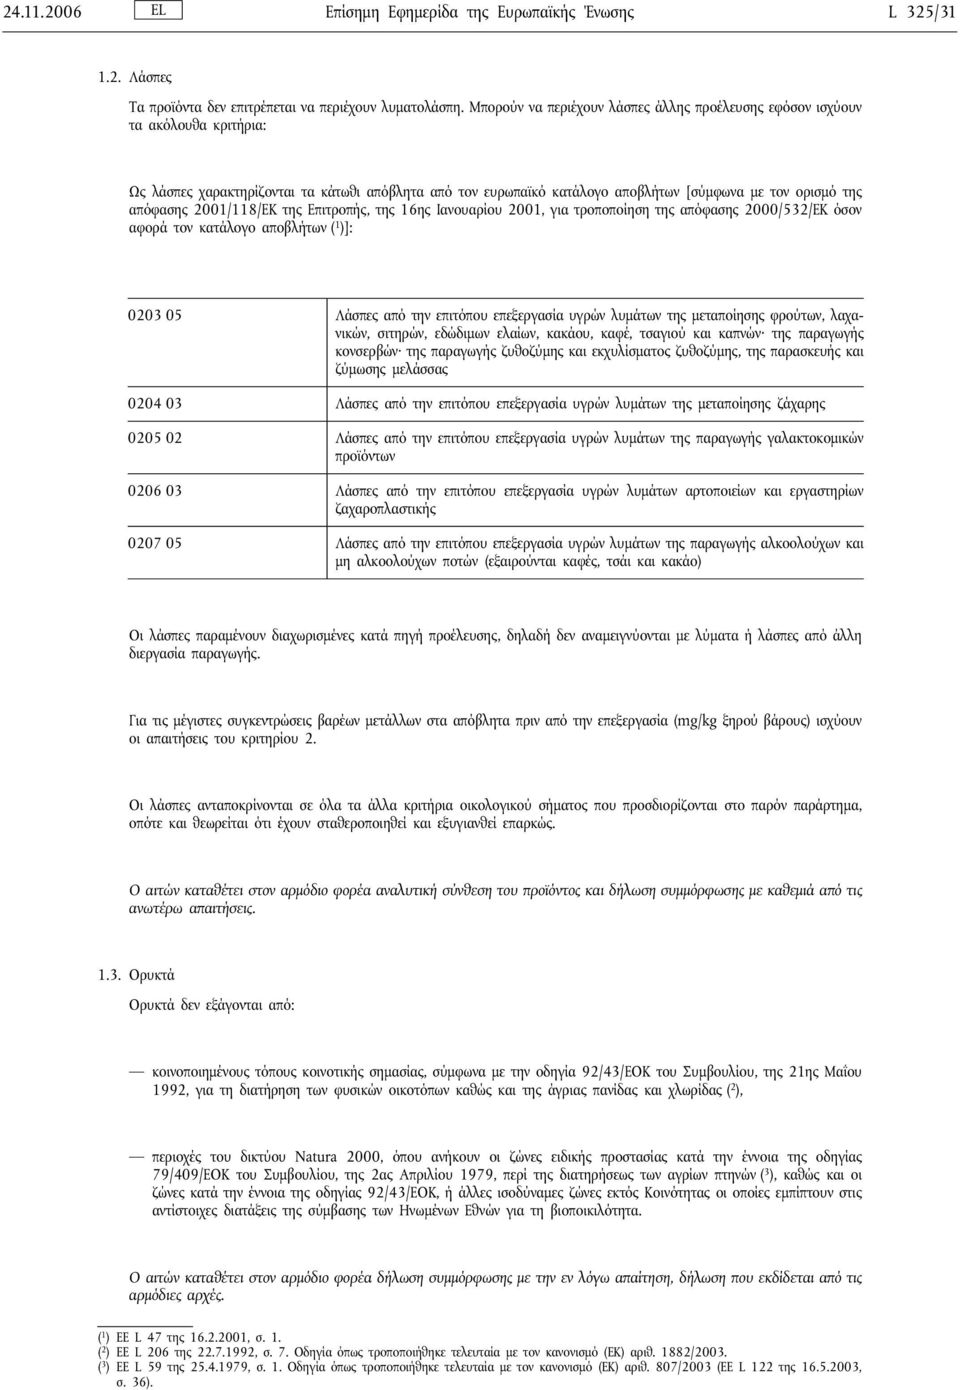 2001/118/ΕΚ της Επιτροπής, της 16ης Ιανουαρίου 2001, για τροποποίηση της απόφασης 2000/532/ΕΚ όσον αφορά τον κατάλογο αποβλήτων ( 1 )]: 0203 05 Λάσπες από την επιτόπου επεξεργασία υγρών λυμάτων της